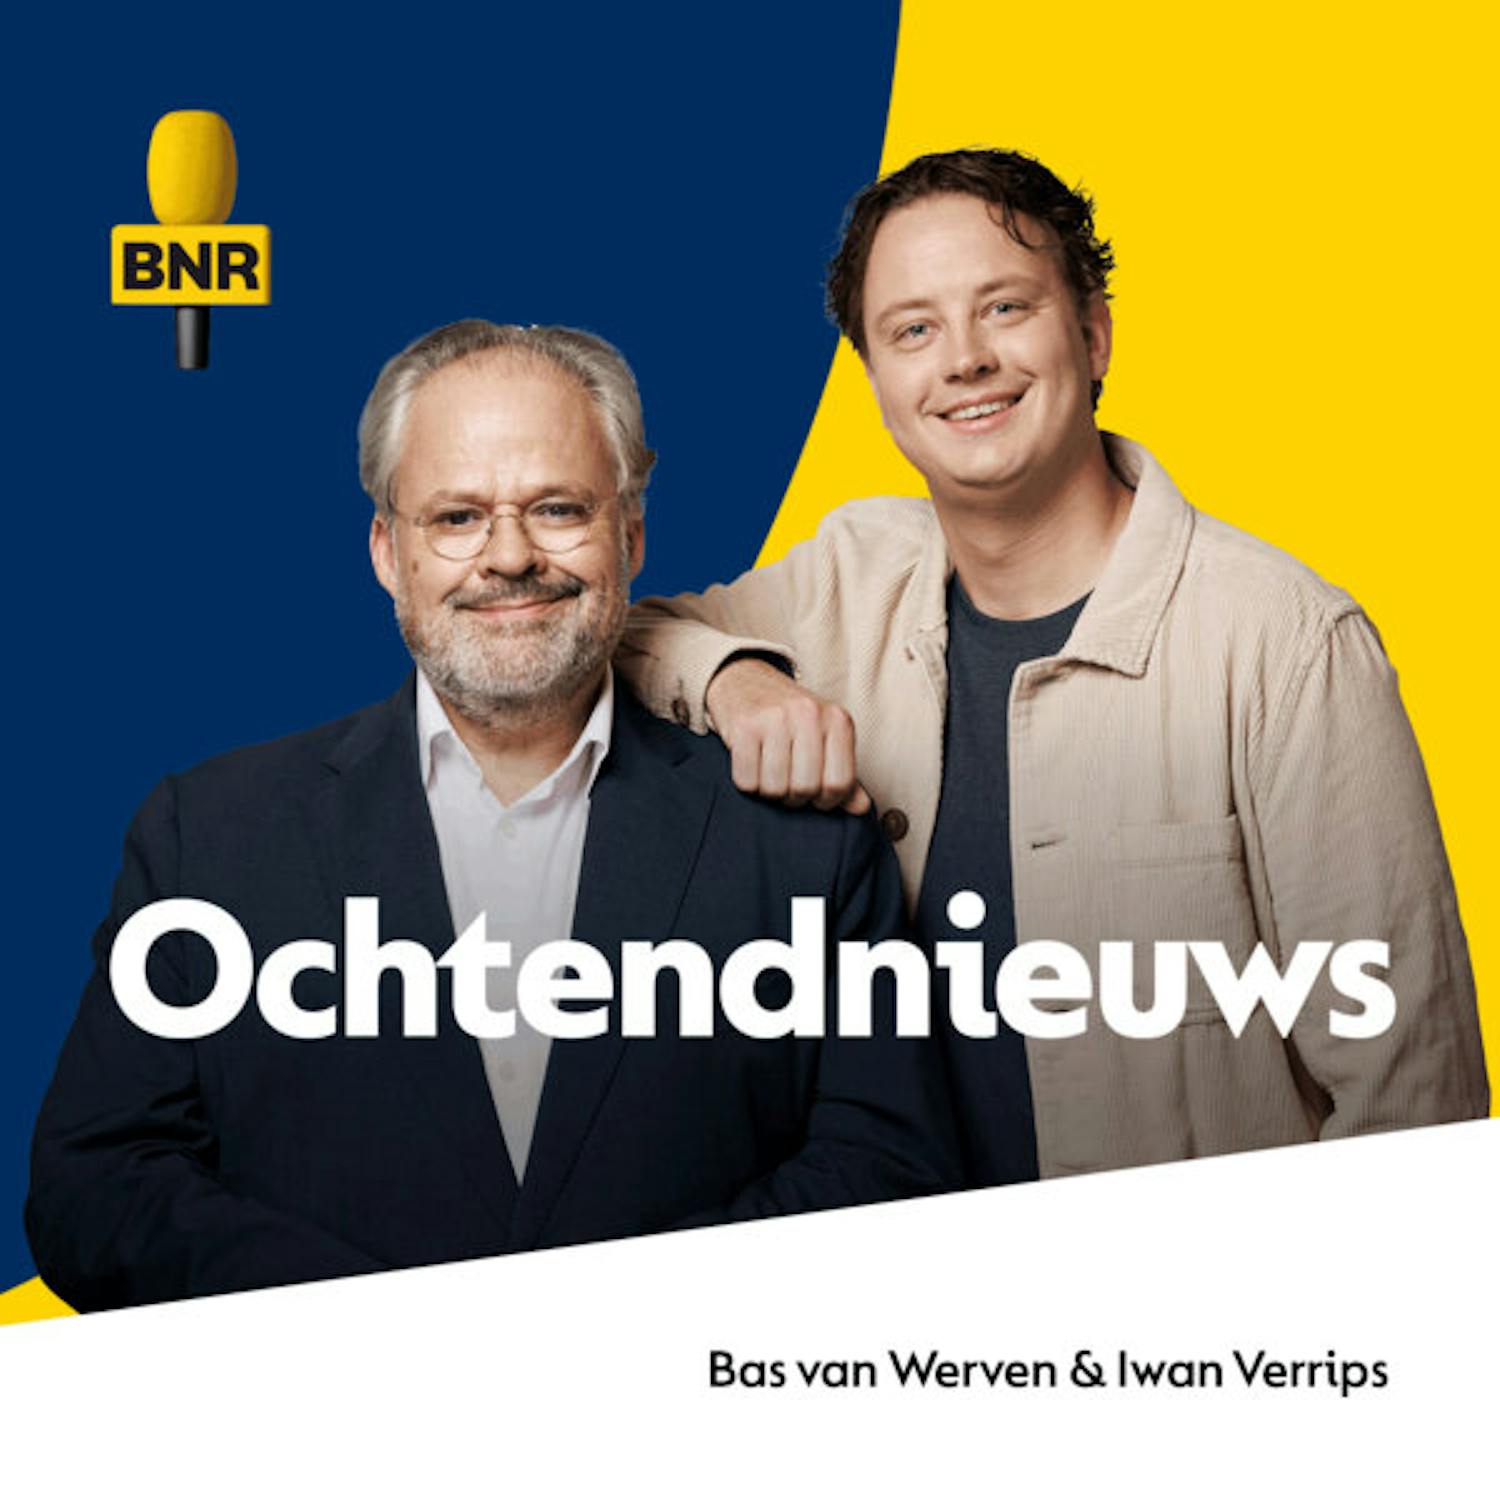 www.bnr.nl